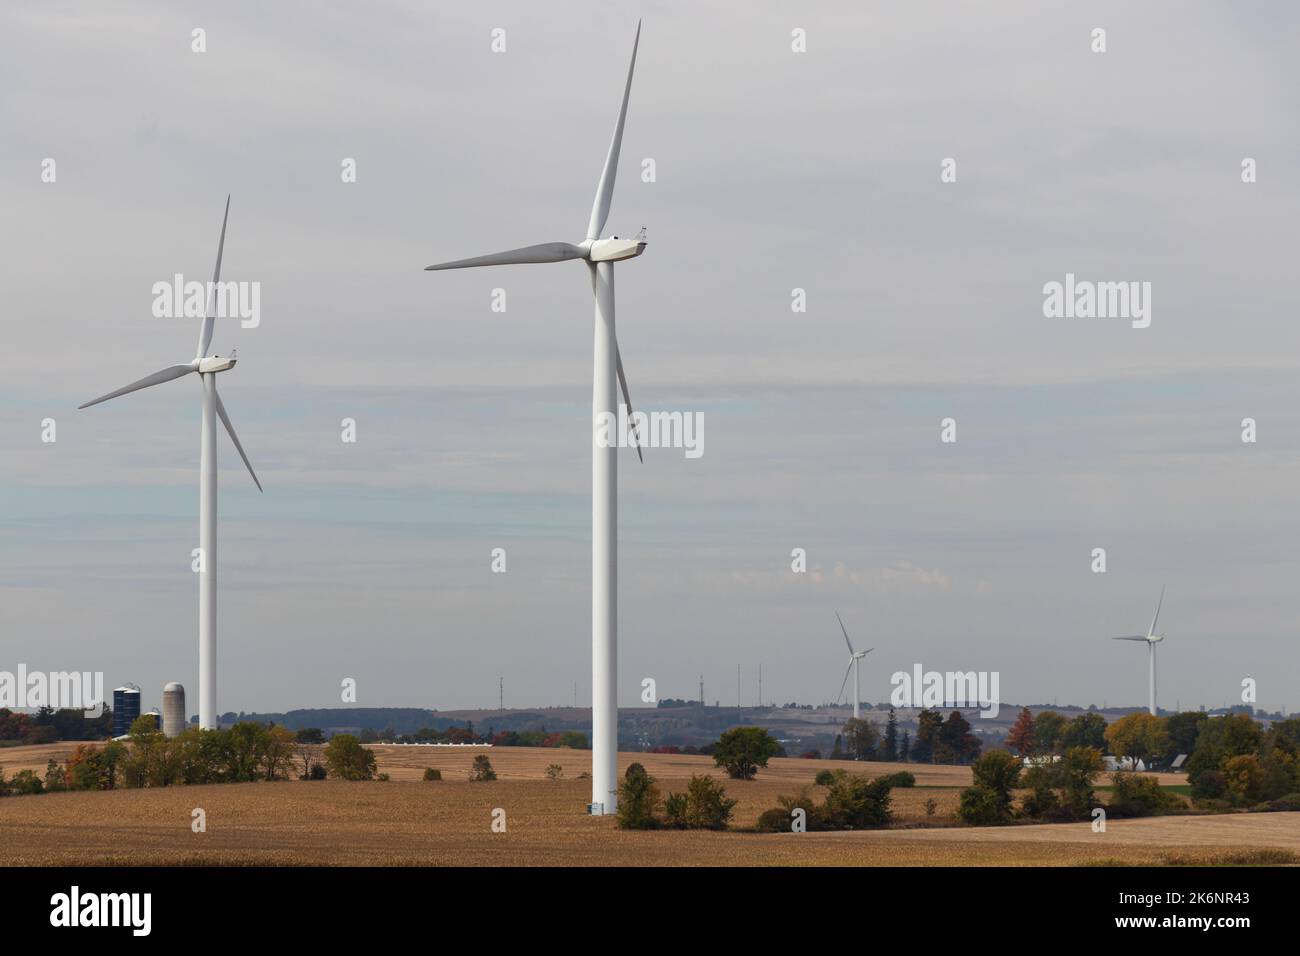 Les éoliennes sont vues dans une zone rurale par un jour nuageux; les fermes et les silos peuvent être vus en arrière-plan. Banque D'Images